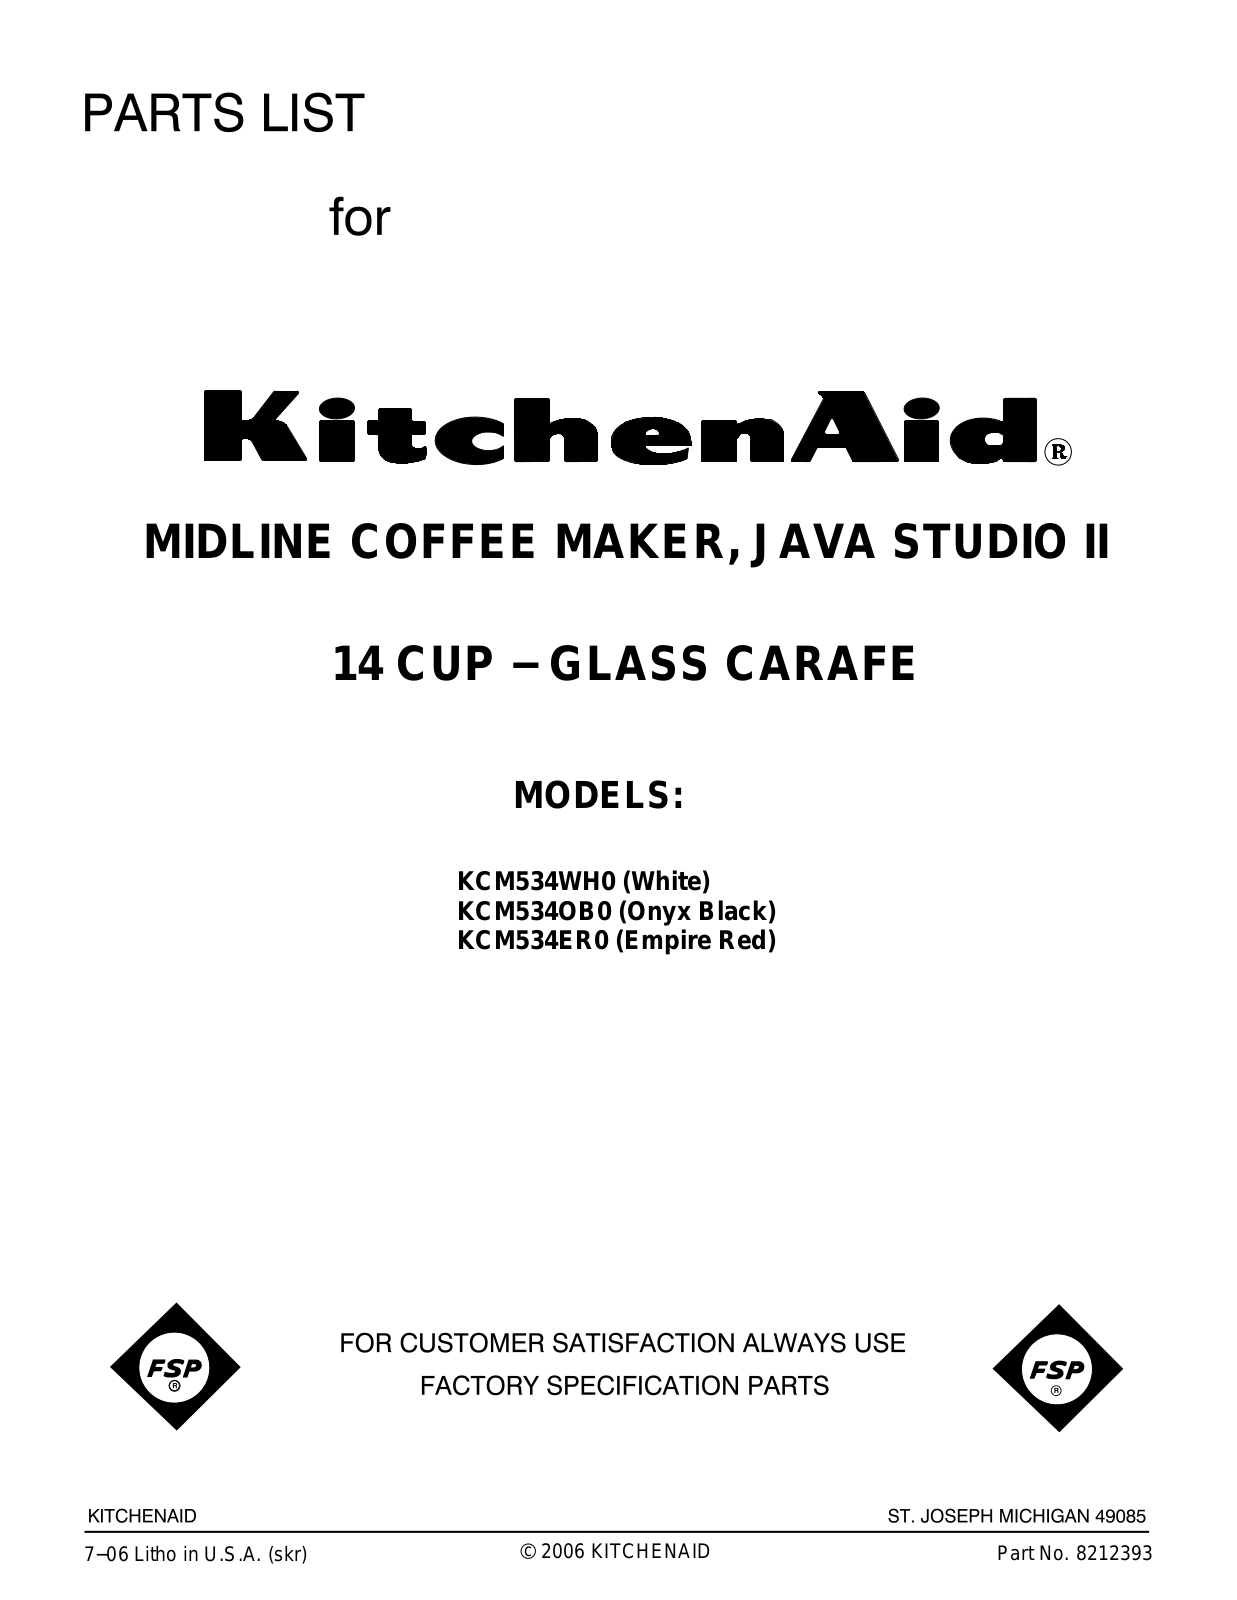 KitchenAid KCM534ER0, KCM534OB0, KCM534WH0 User Manual